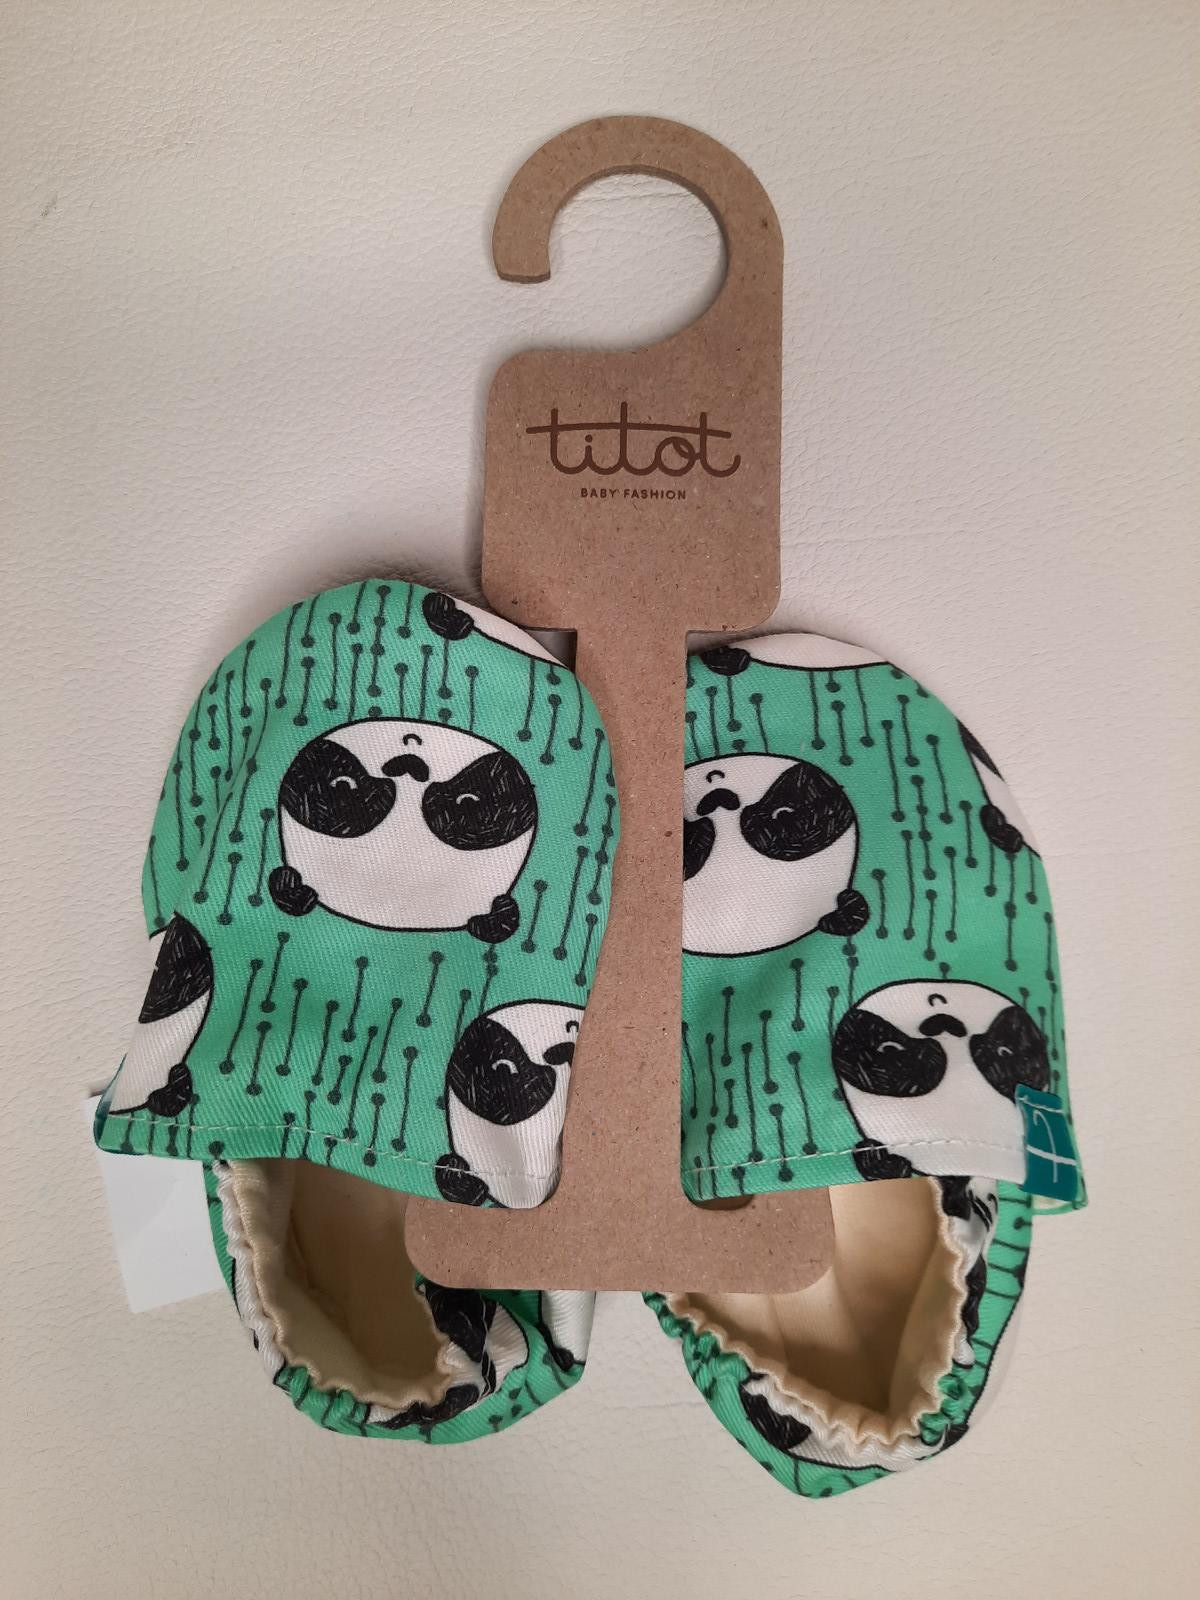 Chaussons TITOT - Panda - Boutique Toup'tibou - photo 6